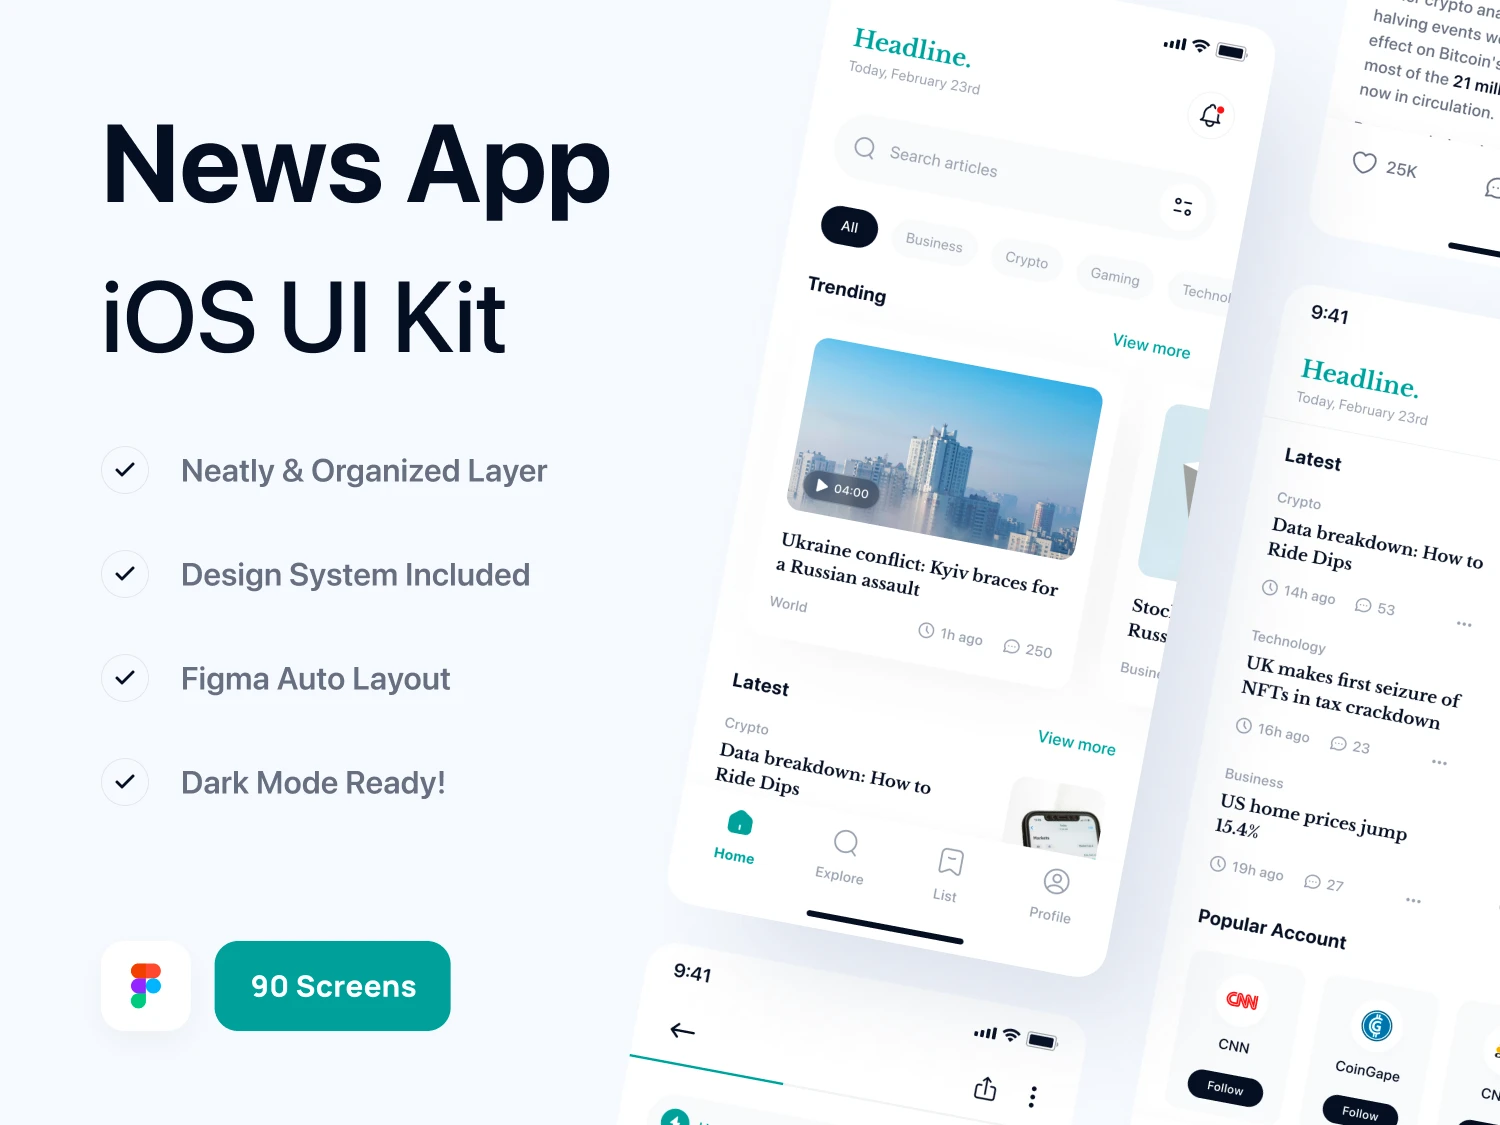 [VIP] Headline: News App UI Kit